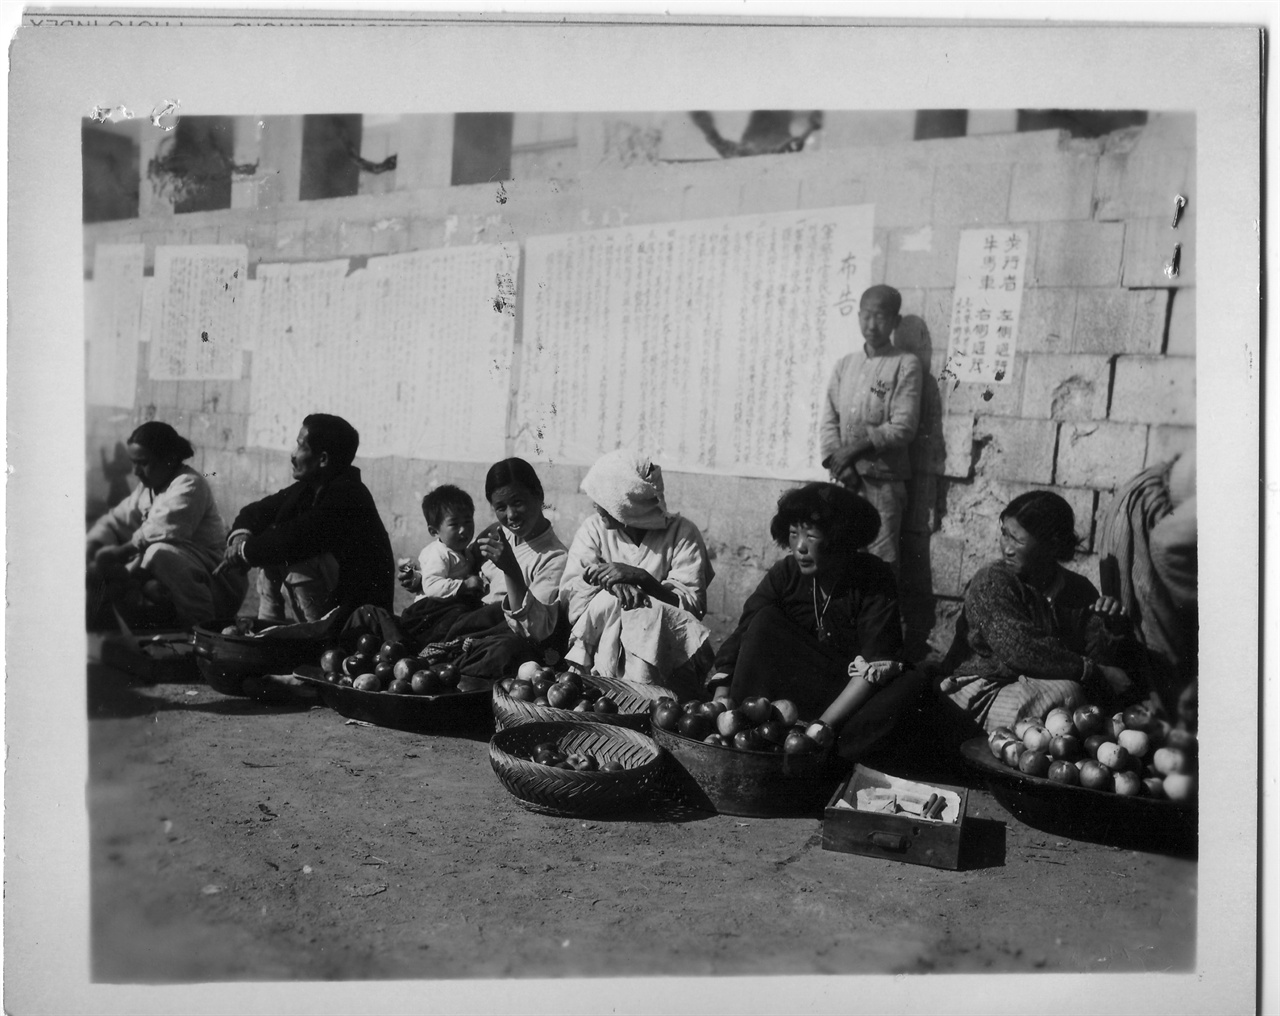 1950. 11. 1. 원산, 노점 과일가게로 바구니에 사과를 담아 팔고 있다. 